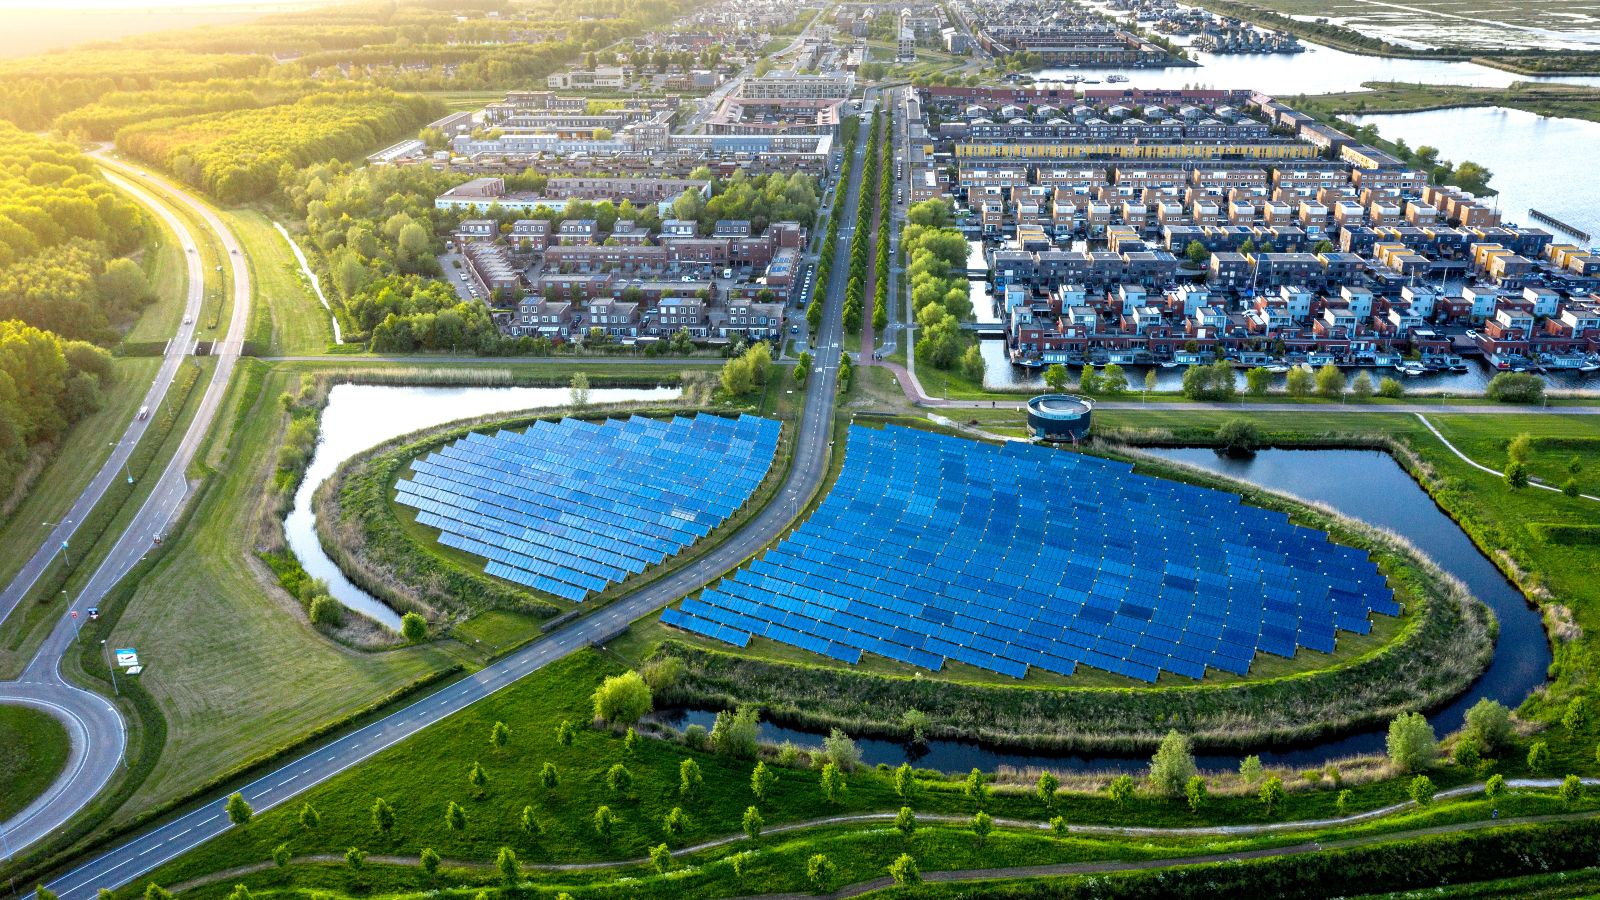 Luftaufnahme eines modernen, nachhaltigen Viertels in Almere, Niederlande. Eine große, runde Ansammlung von Solaranlagen ist im Zentrum zu sehen.